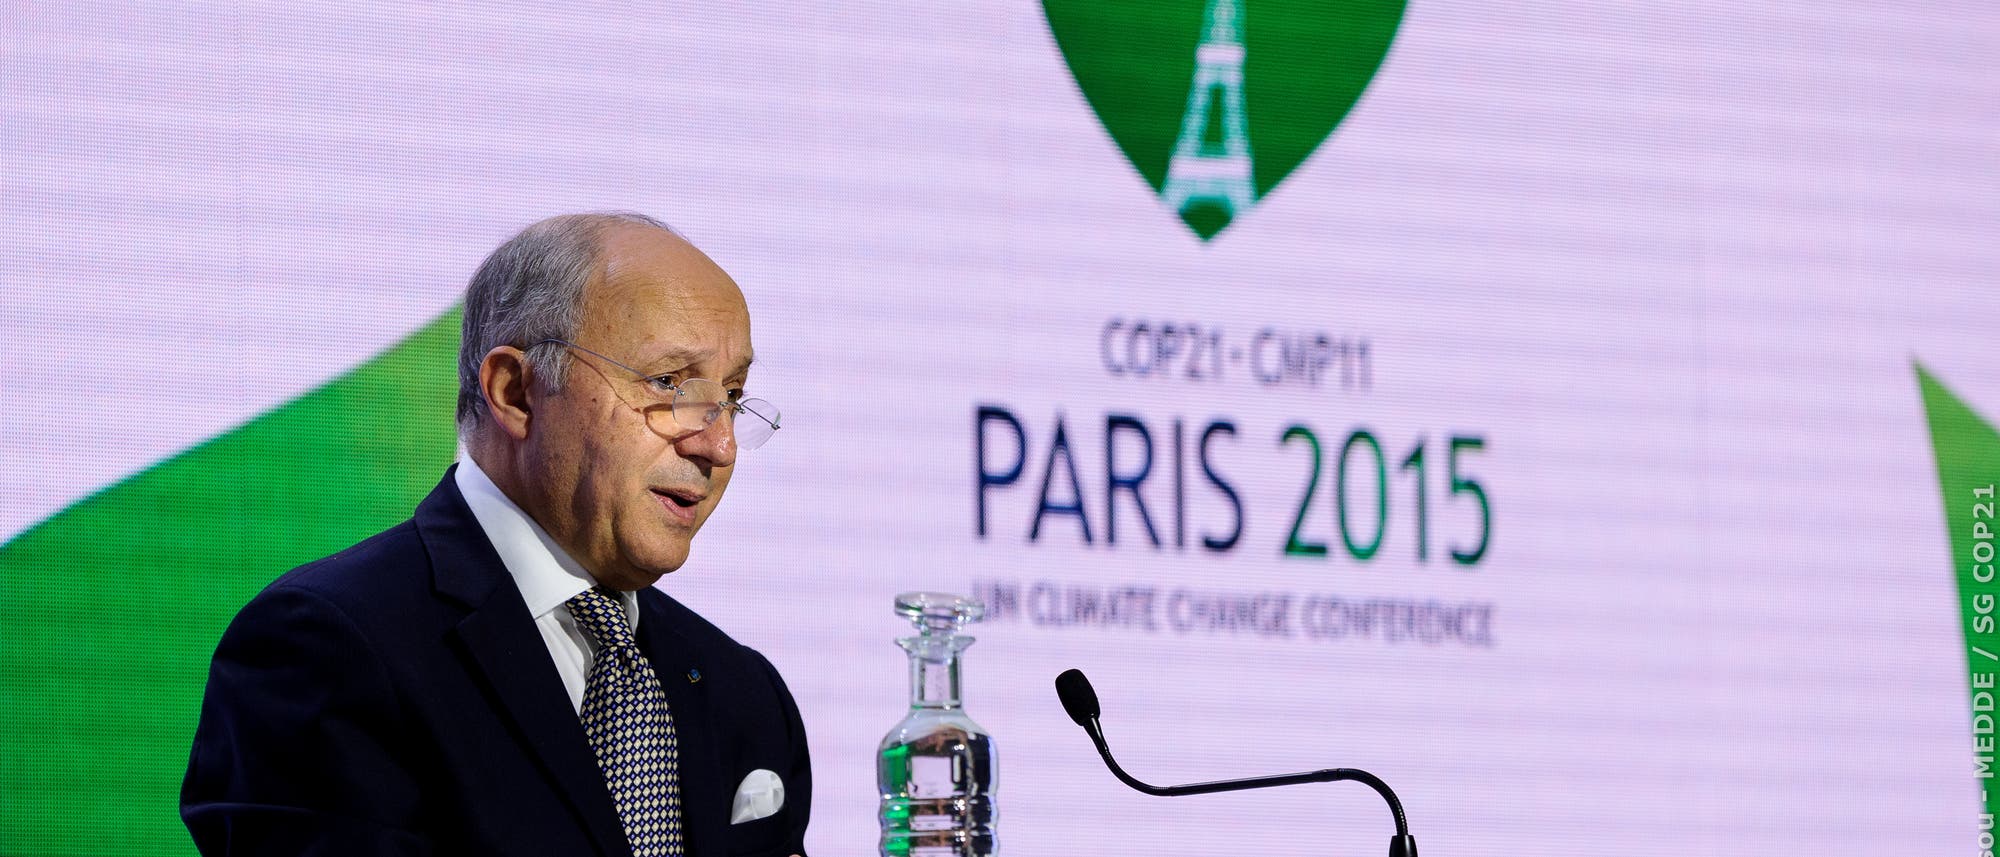 Der französische Außenminister Laurent Fabius beim COP21